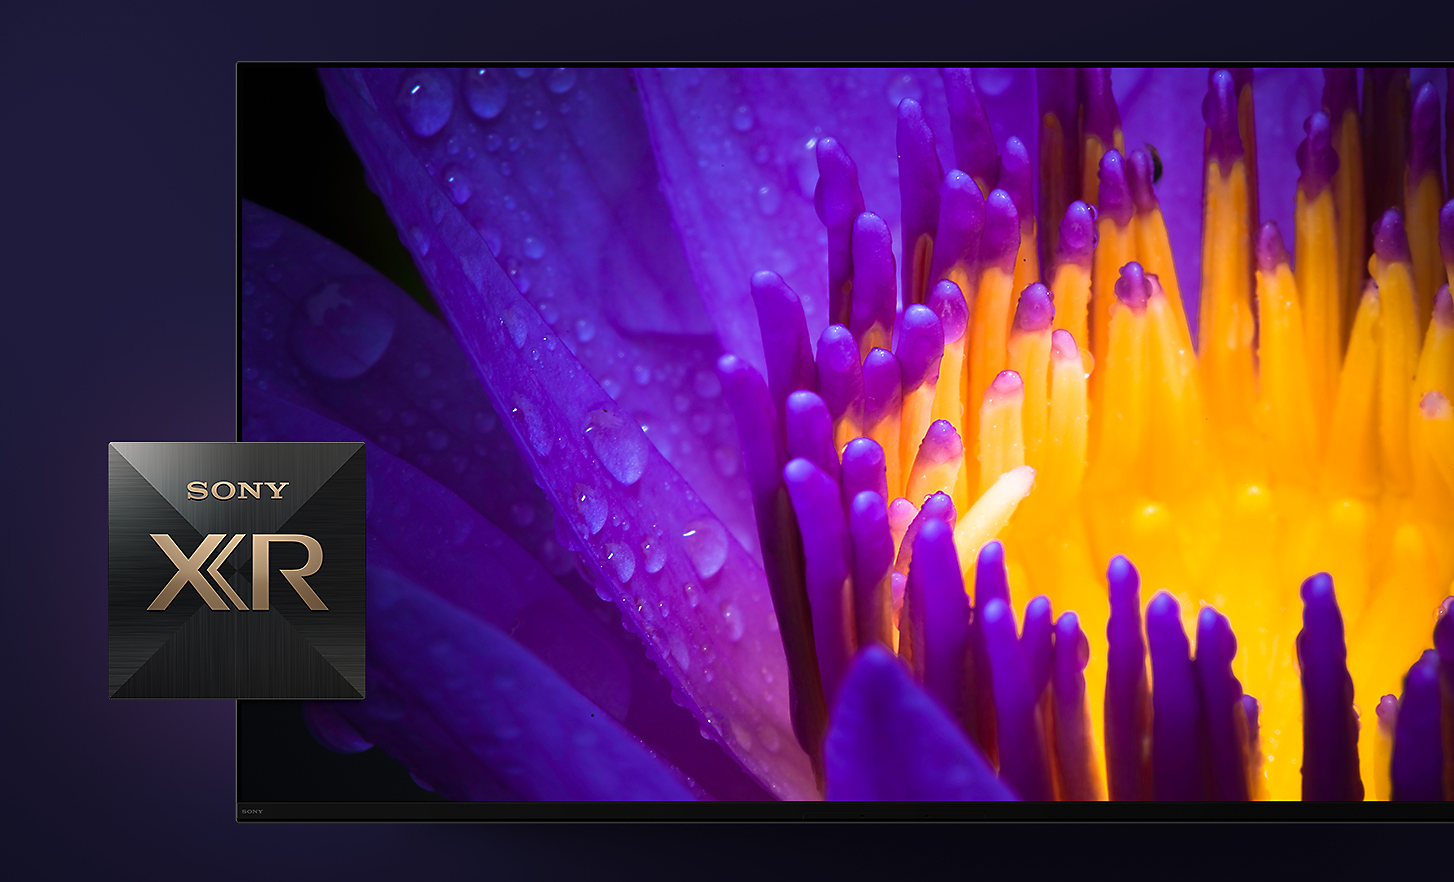 Detaljebillede af TV-skærm, der viser gule og violette blomsterblade med Sony XR-logo i forgrunden